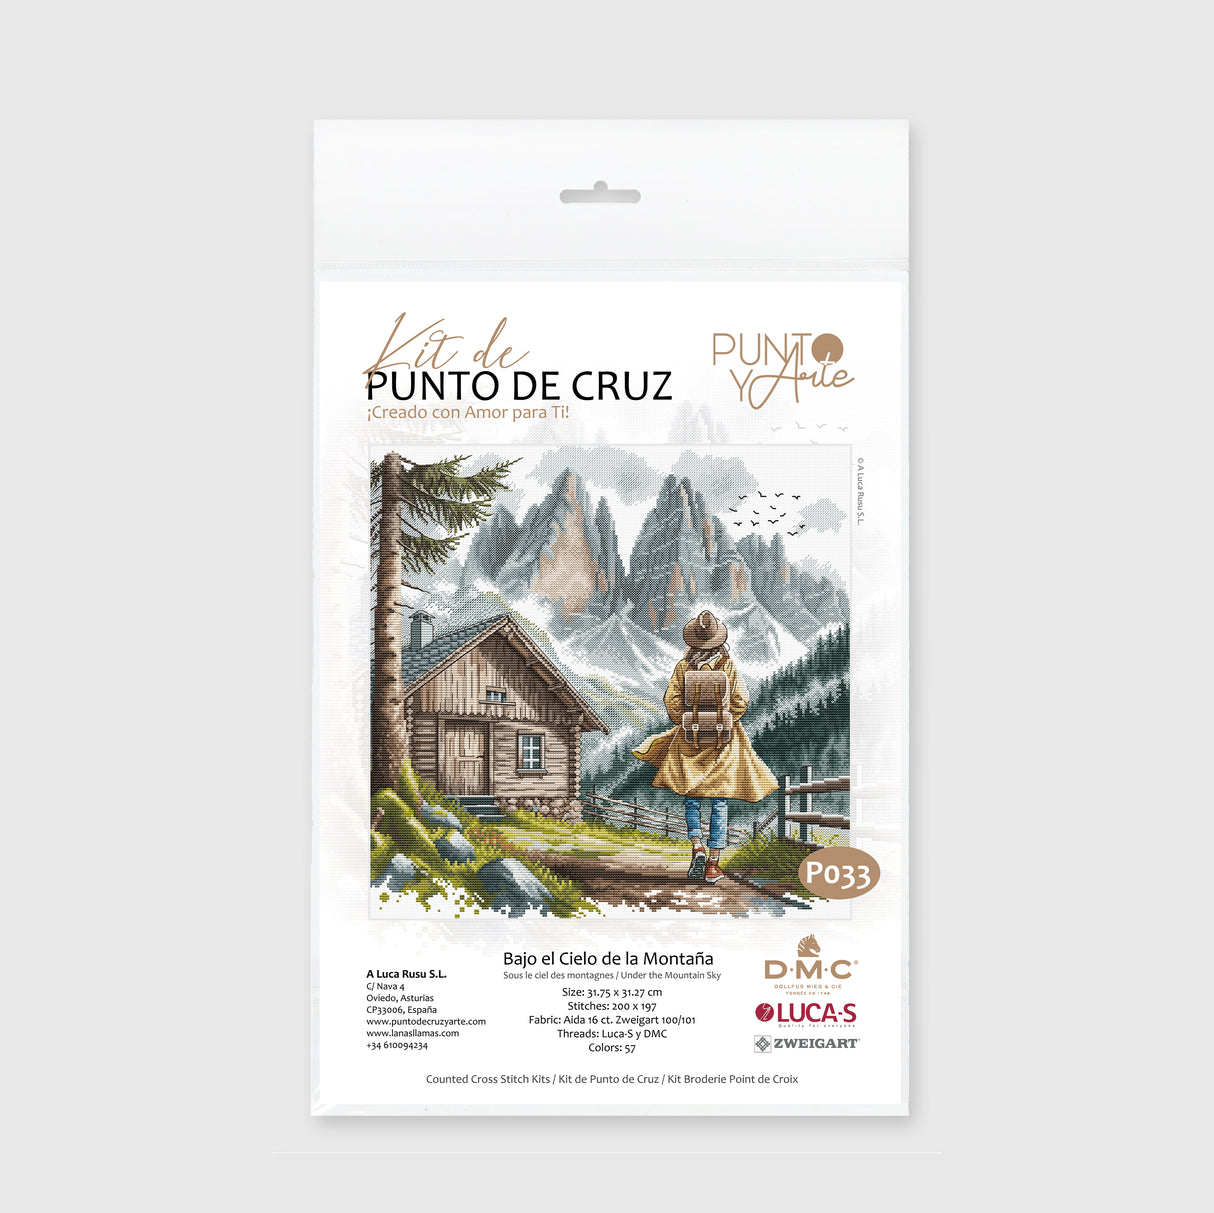 Kit de Punto de Cruz "Bajo el Cielo de la Montaña" P033 de Punto y Arte